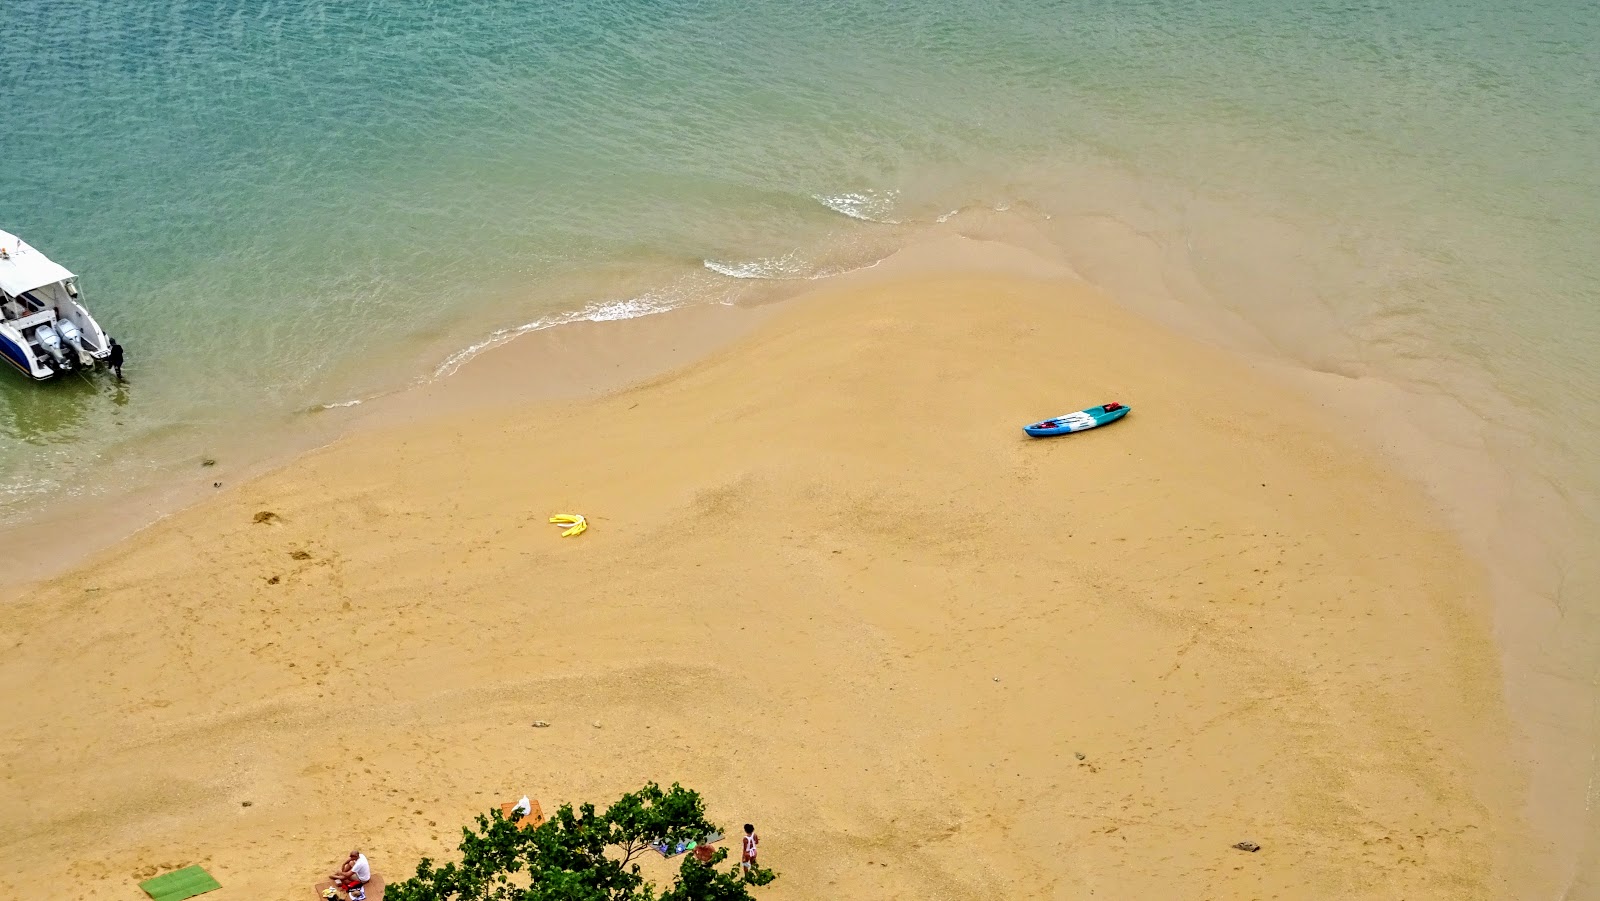 Zdjęcie Ko Nok Beach z powierzchnią piasek z kamykami